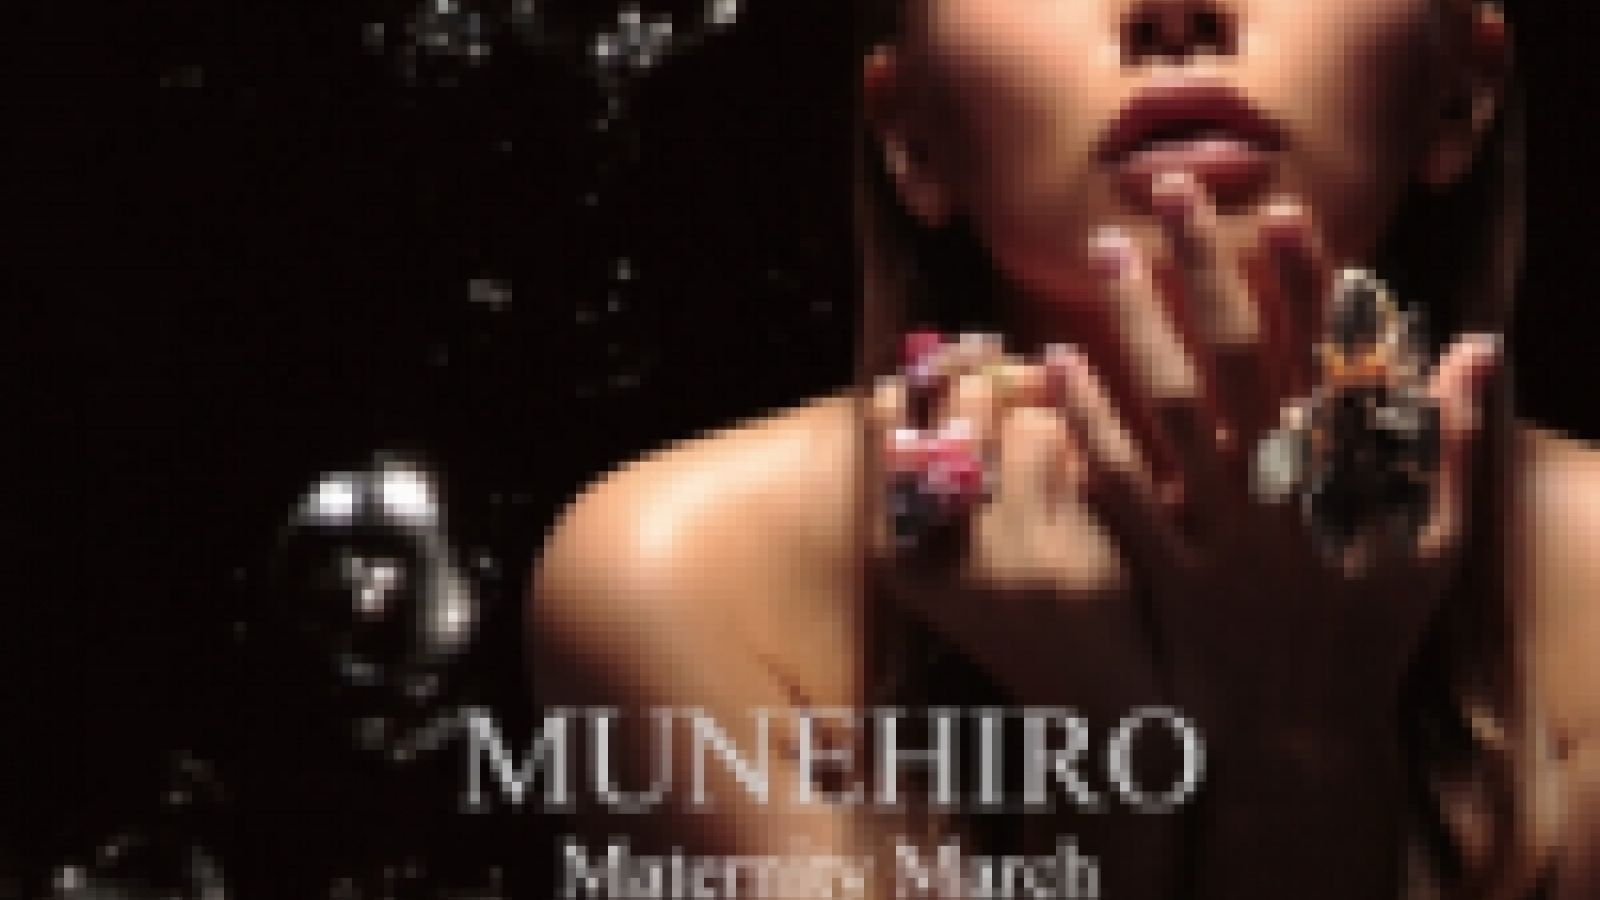 MUNEHIROs neue Single © MUNEHIRO all rights reserved